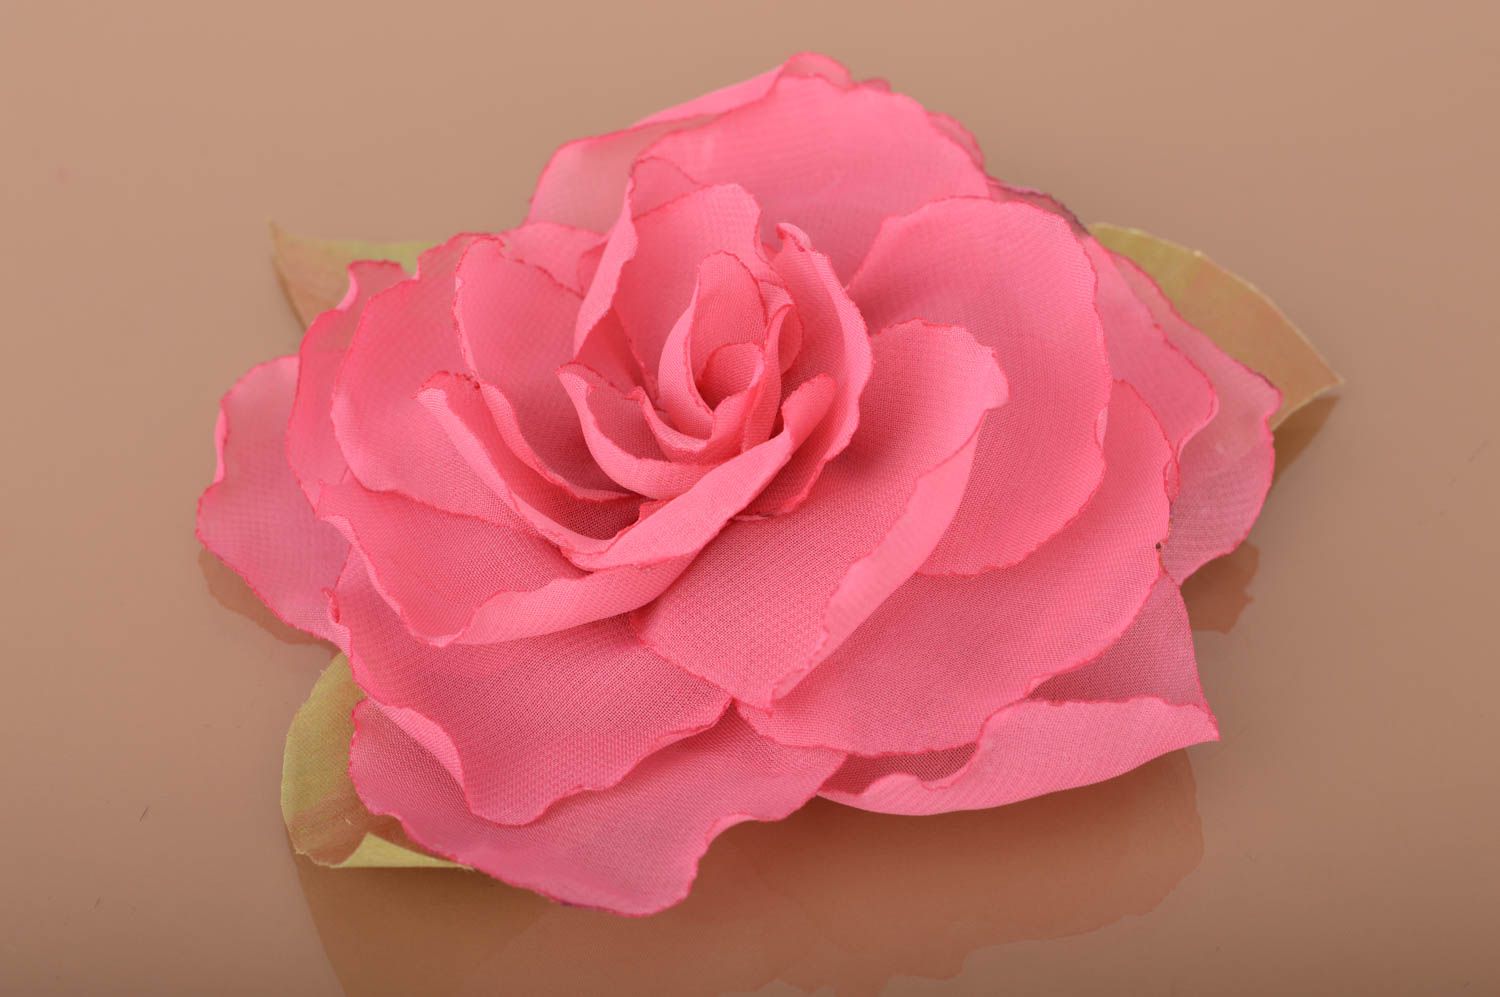 Брошь заколка в виде цветка пиона пышная розовая красивая нарядная ручной работы фото 2